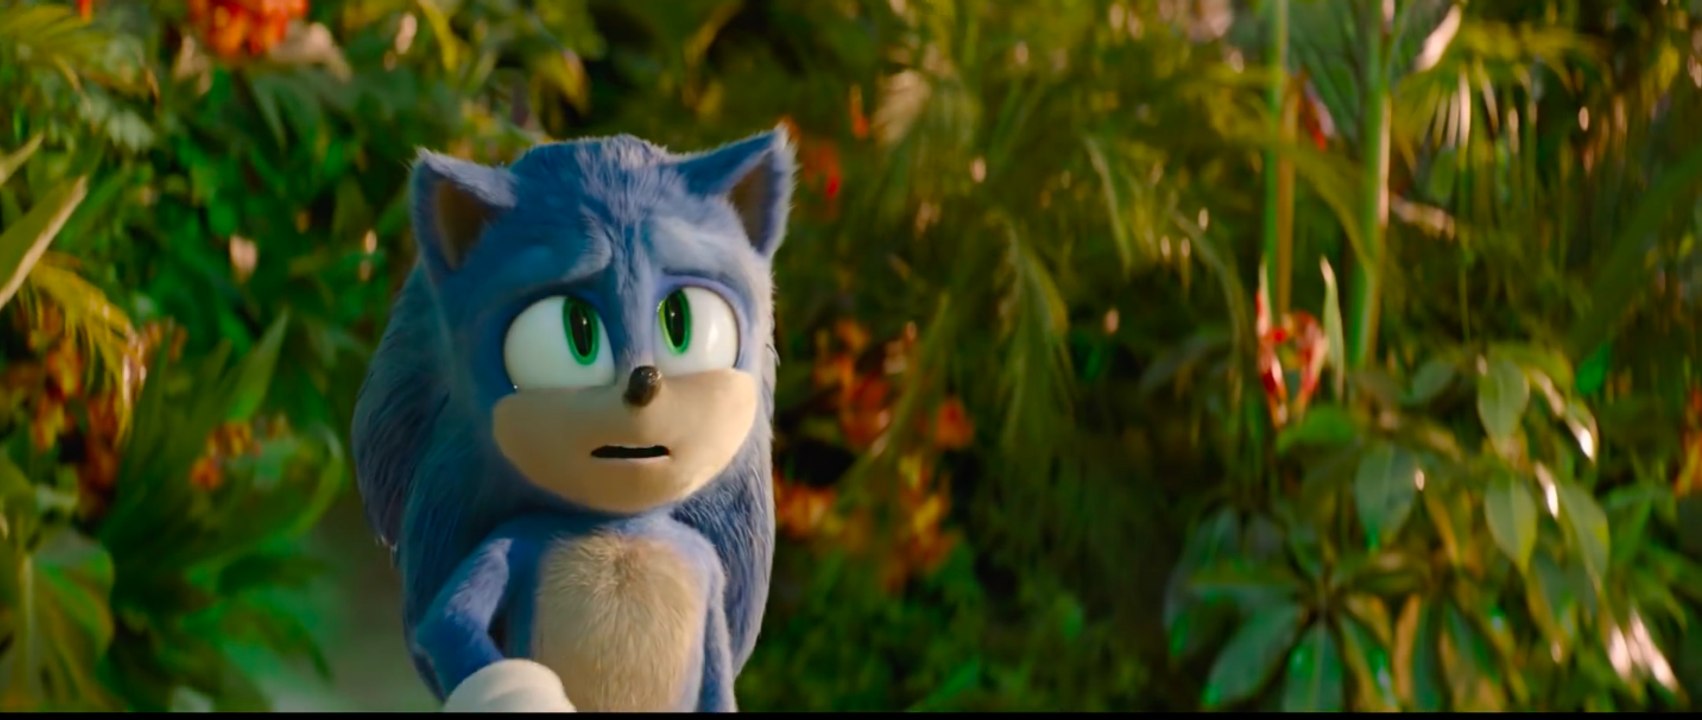 Sonic the Hedgehog 2 - Trailer 2 (Deutsch) HD